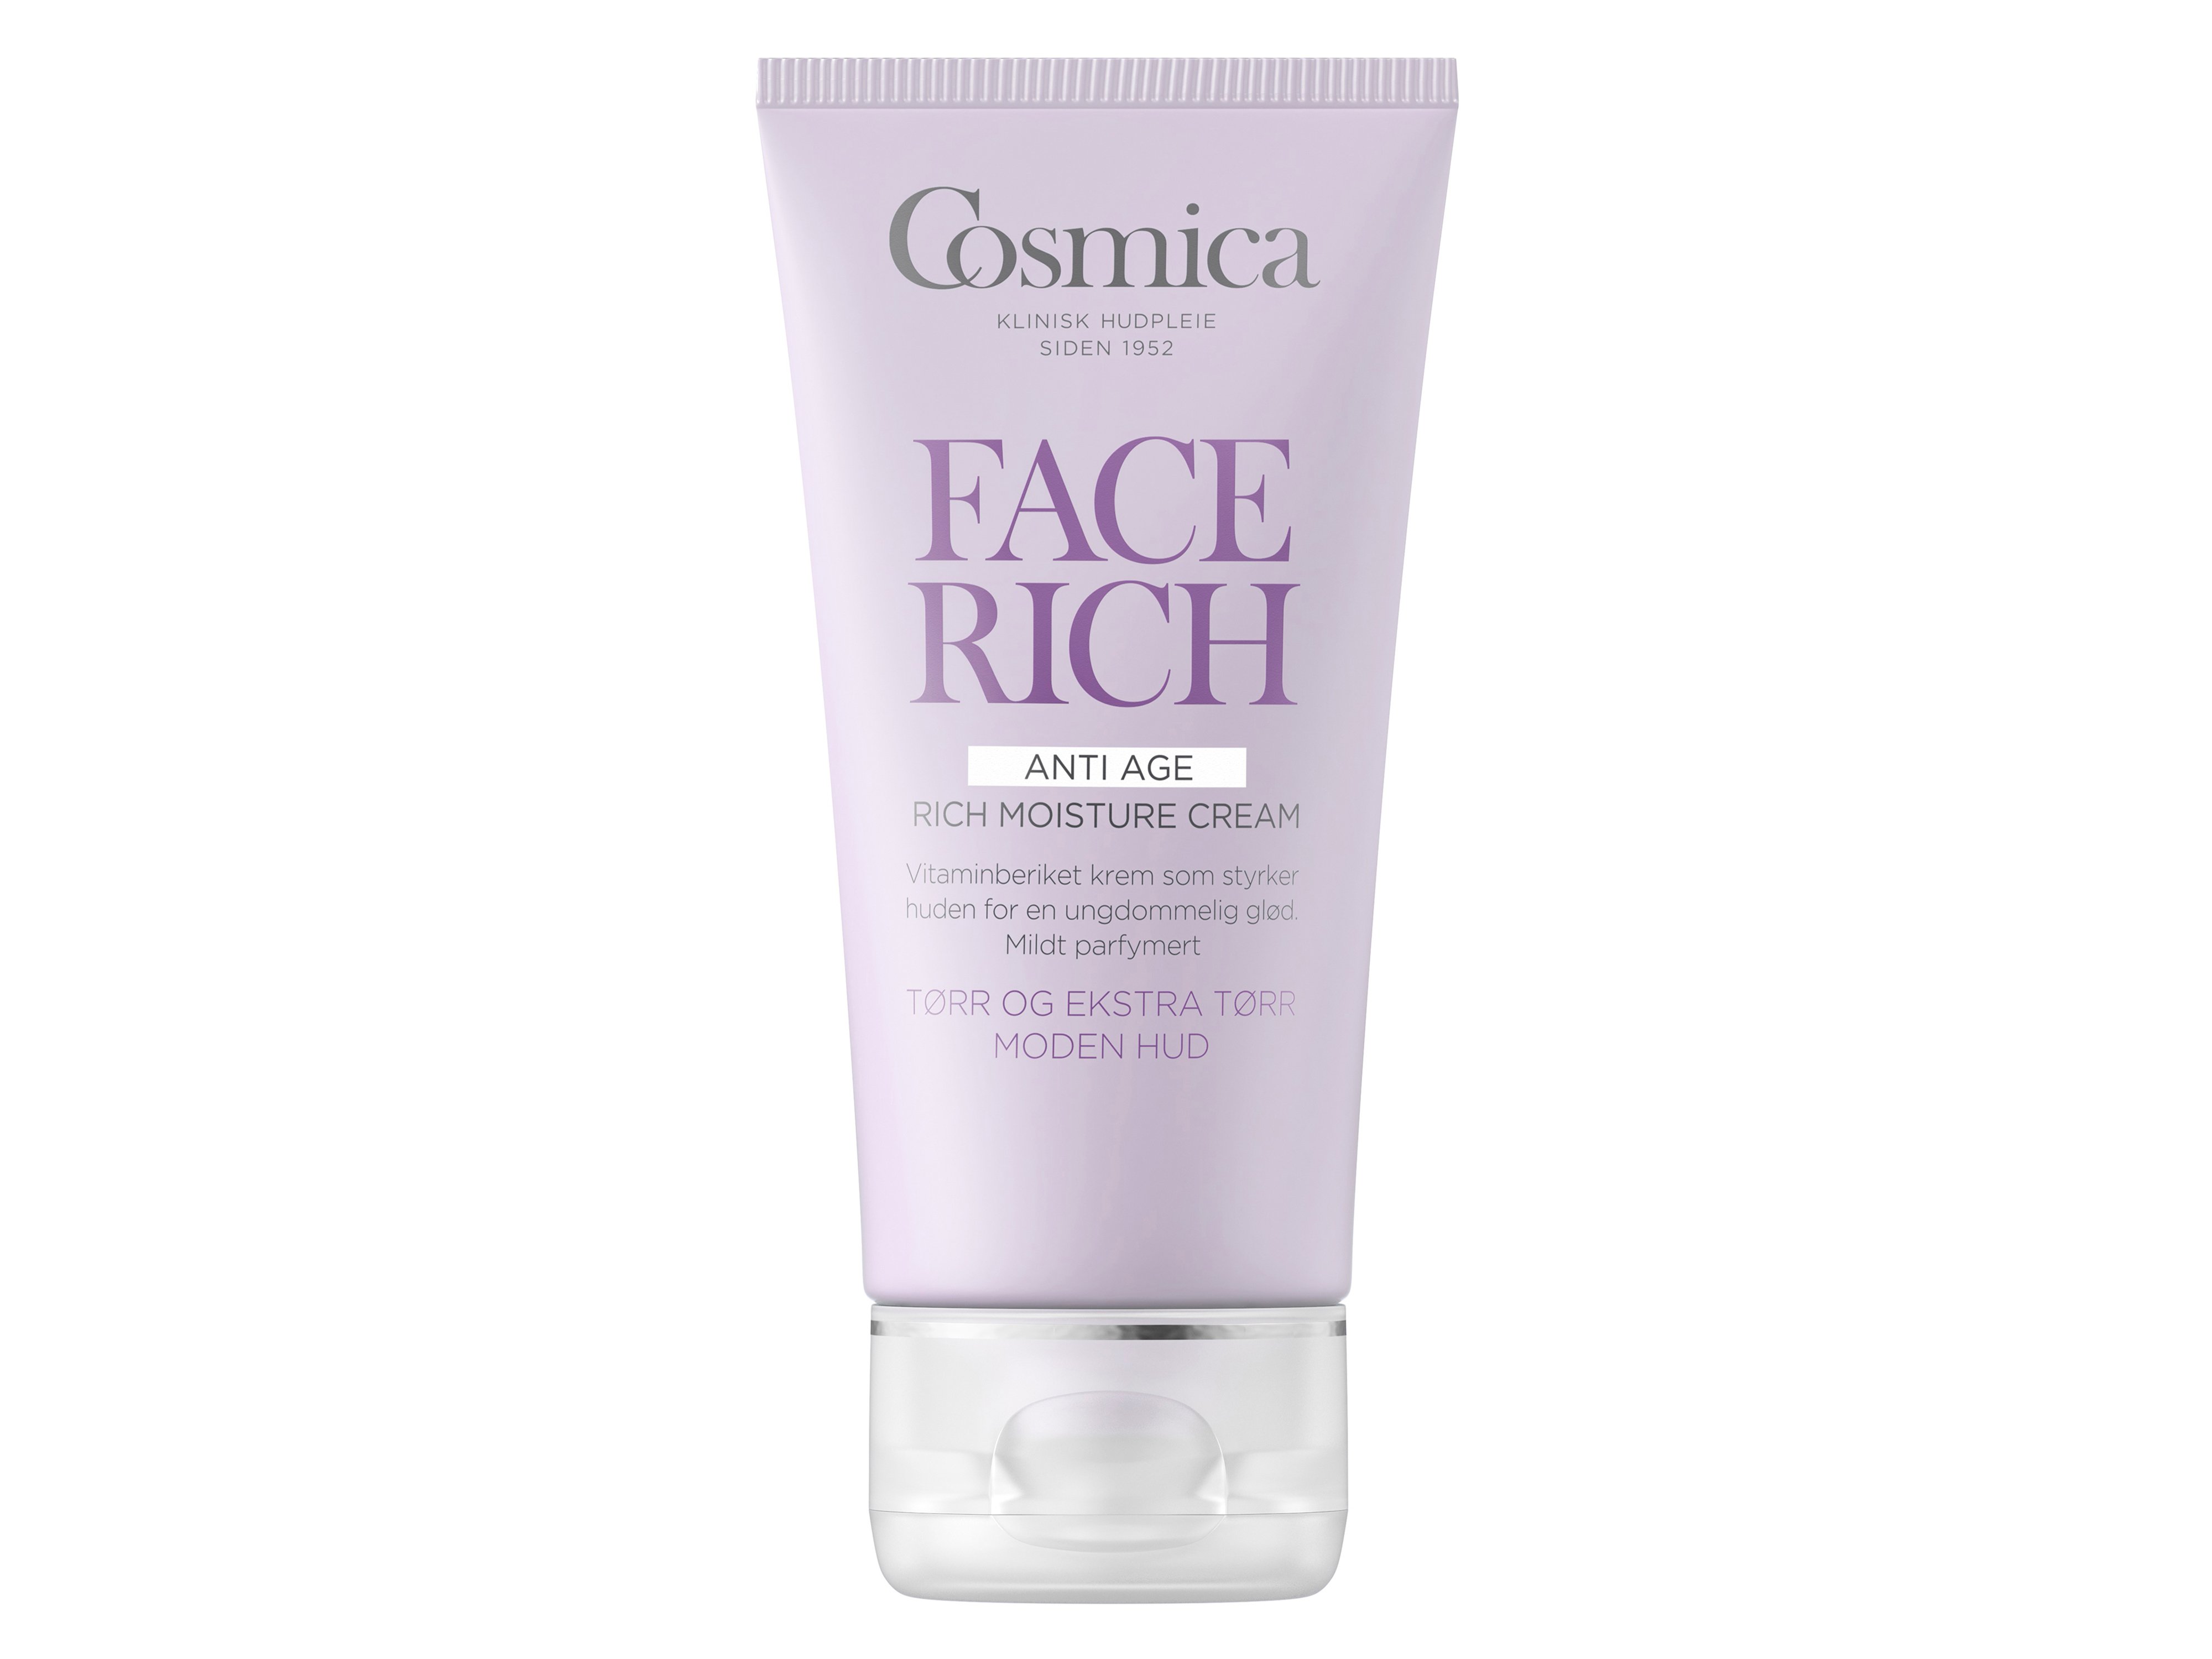 Cosmica Anti Age Rich Moisture Cream, 50 ml